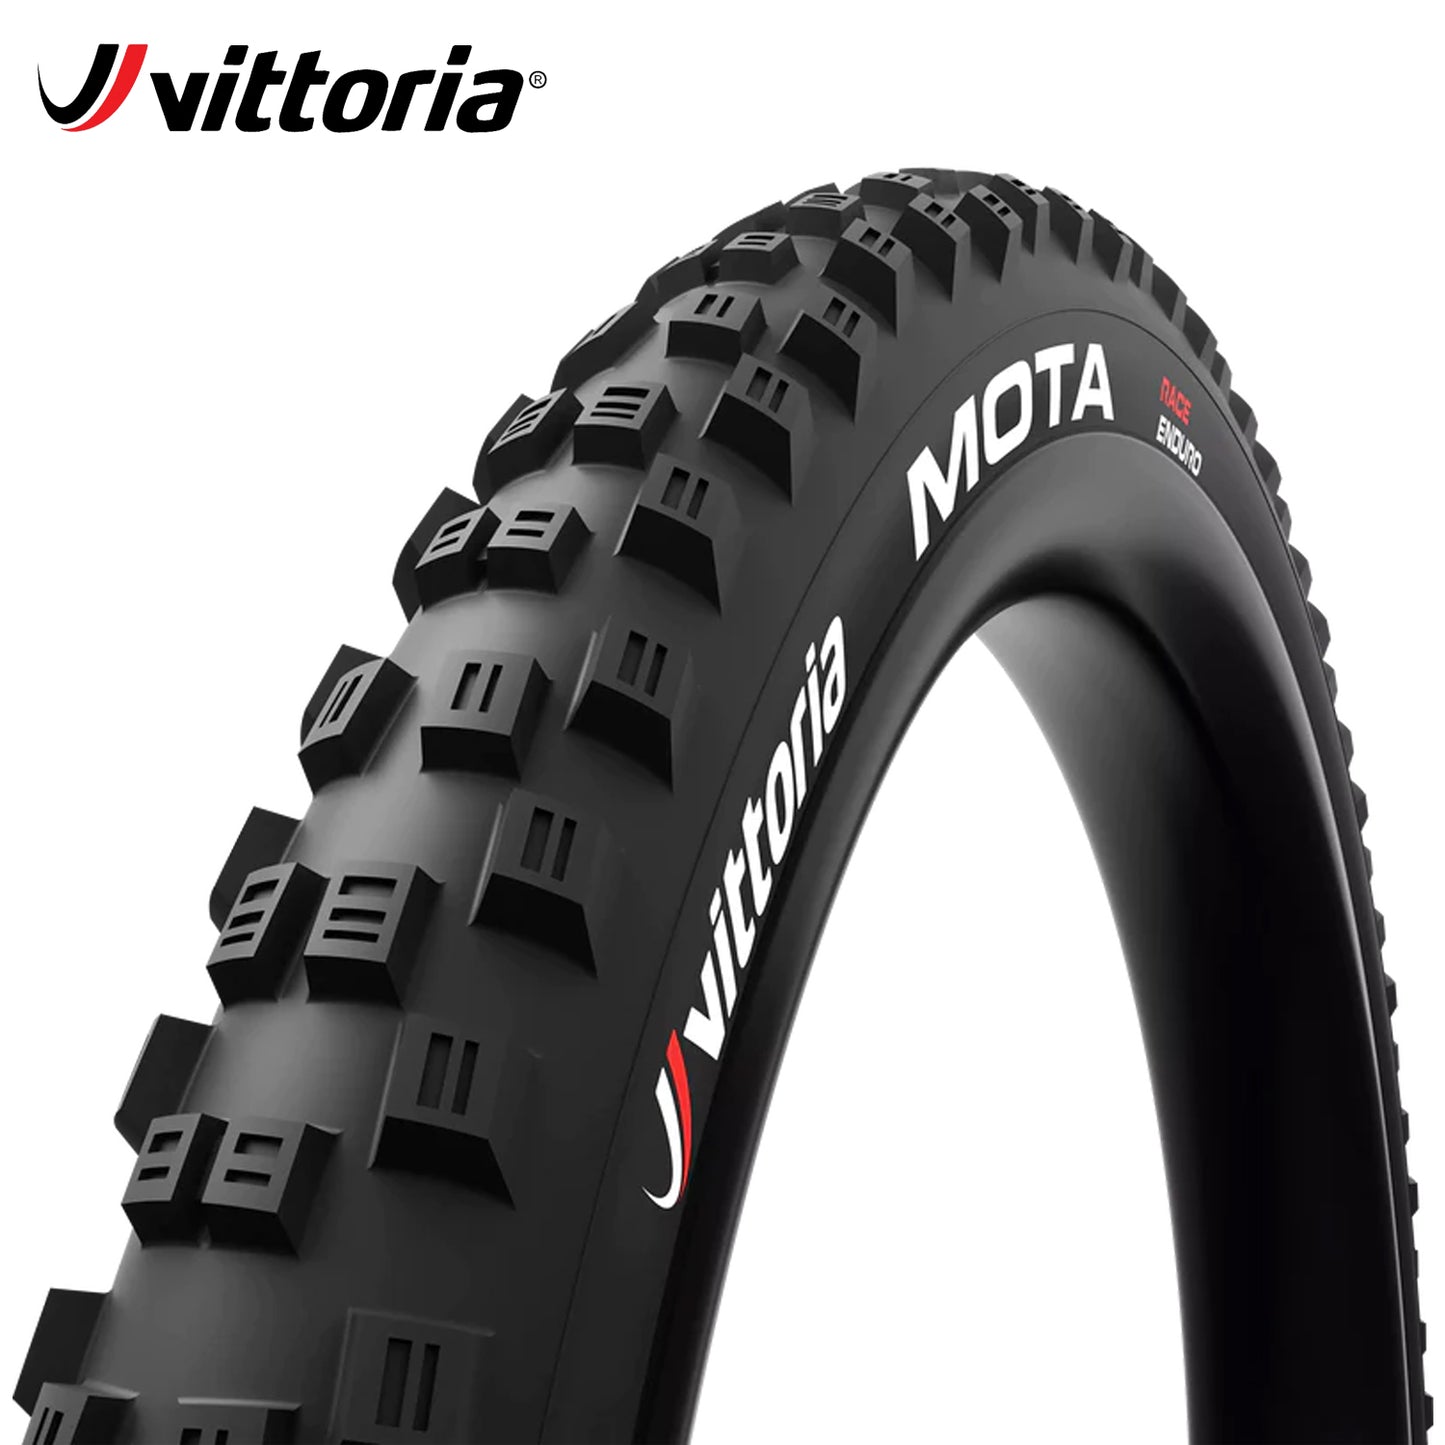 Vittoria Mota Enduro Race MTB Tire 27.5 Tubeless-Ready - Black